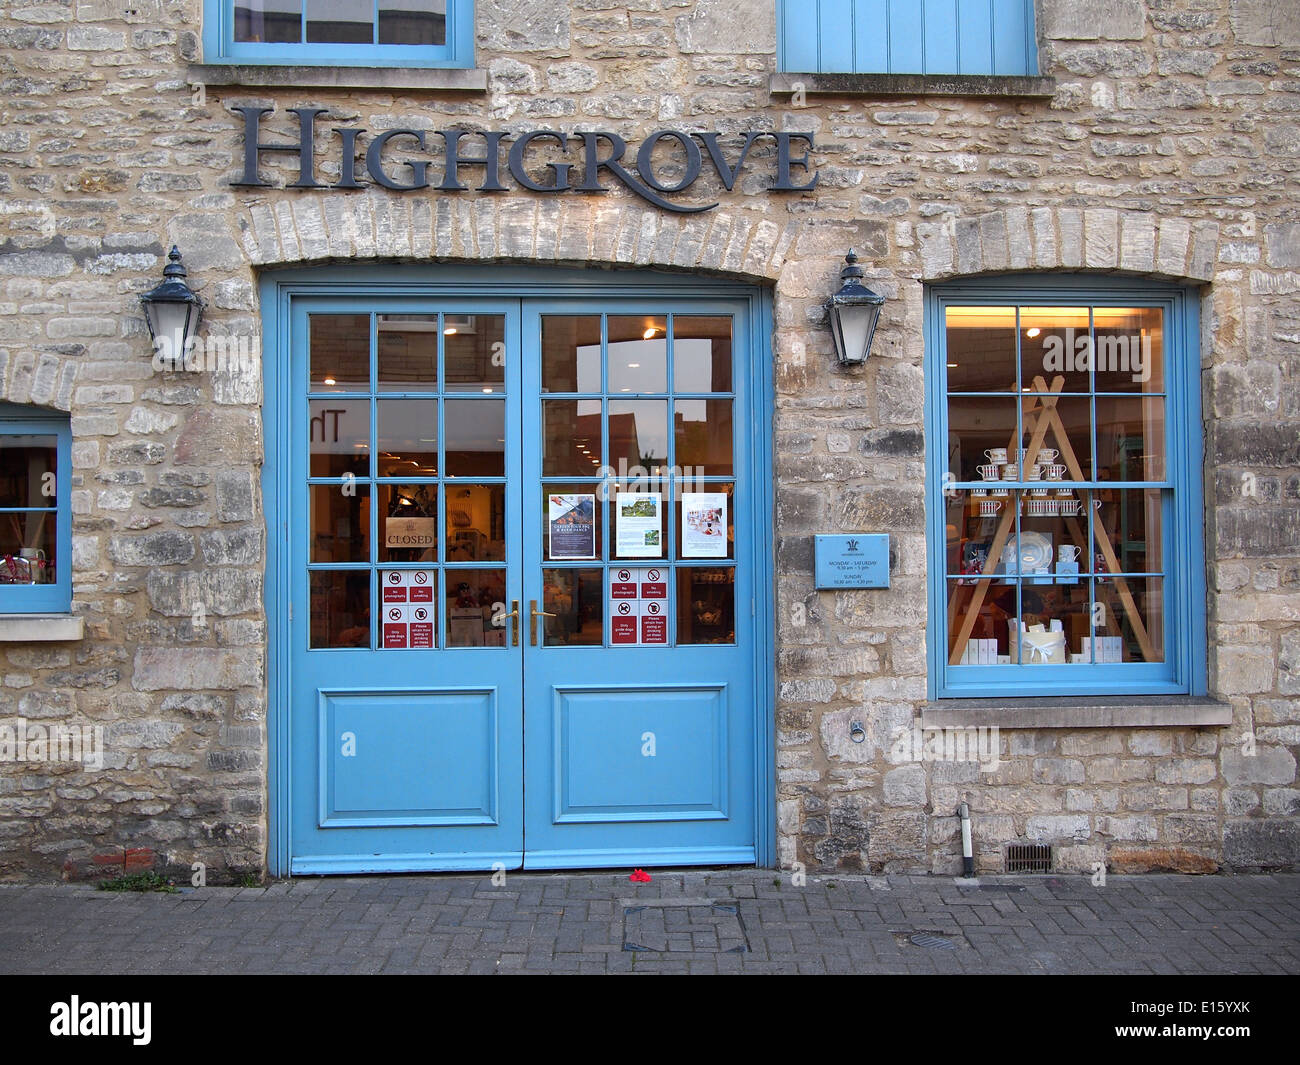 Tetbury, Regno Unito - 25 agosto 2013: la parte anteriore del Royal Highgrove Shop, negozio di Prince Charles a Tetbury, una cittadina della culla Foto Stock